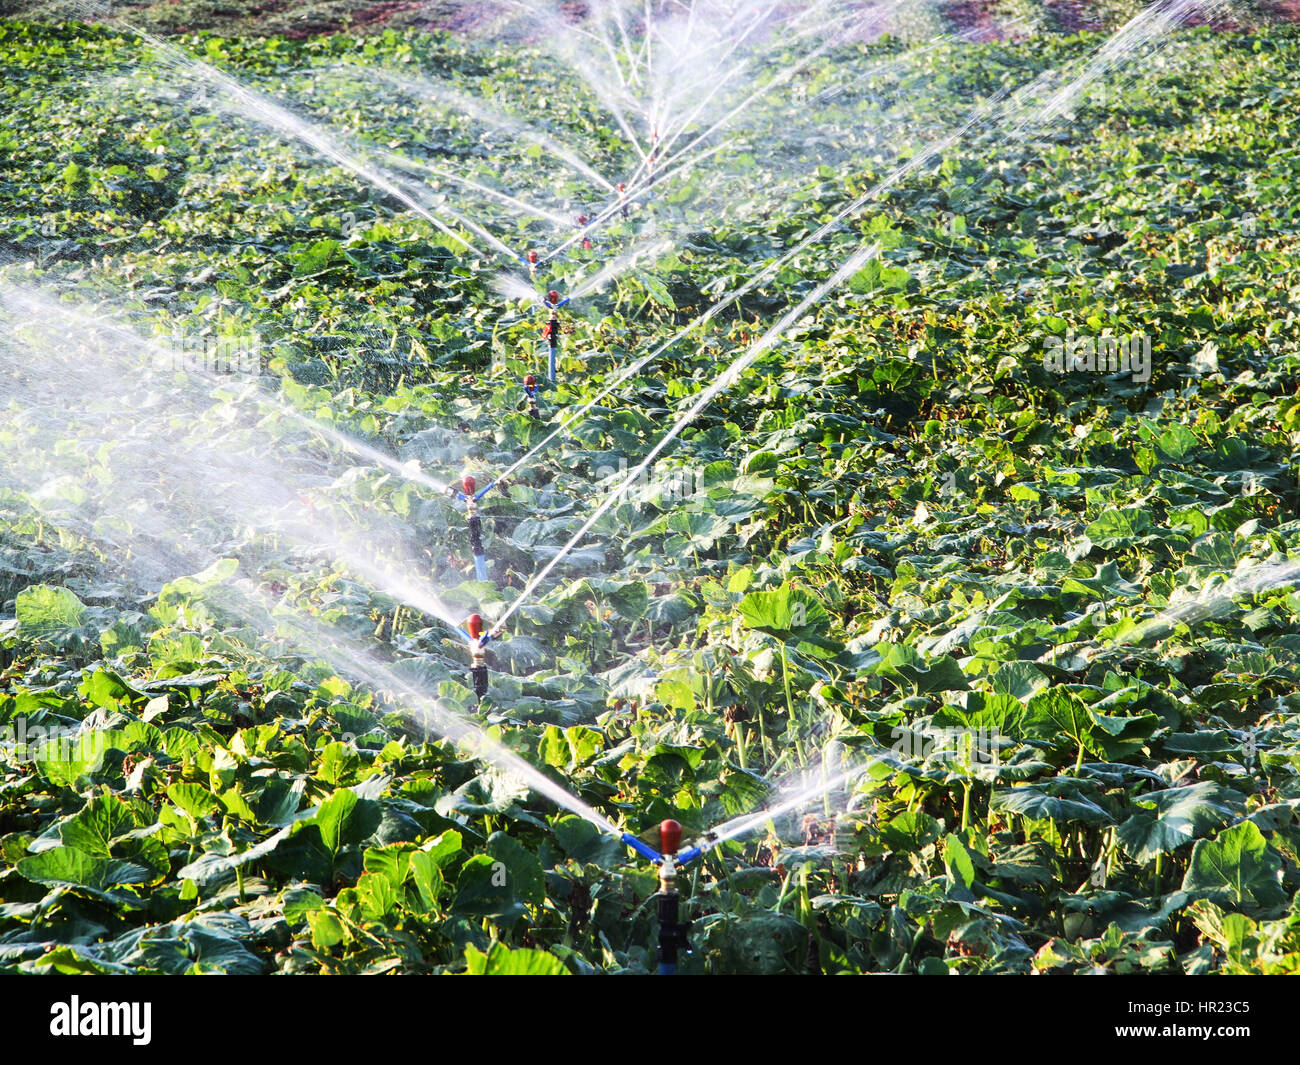 Impianto di irrigazione in funzione di irrigazione di piante agricole Foto Stock